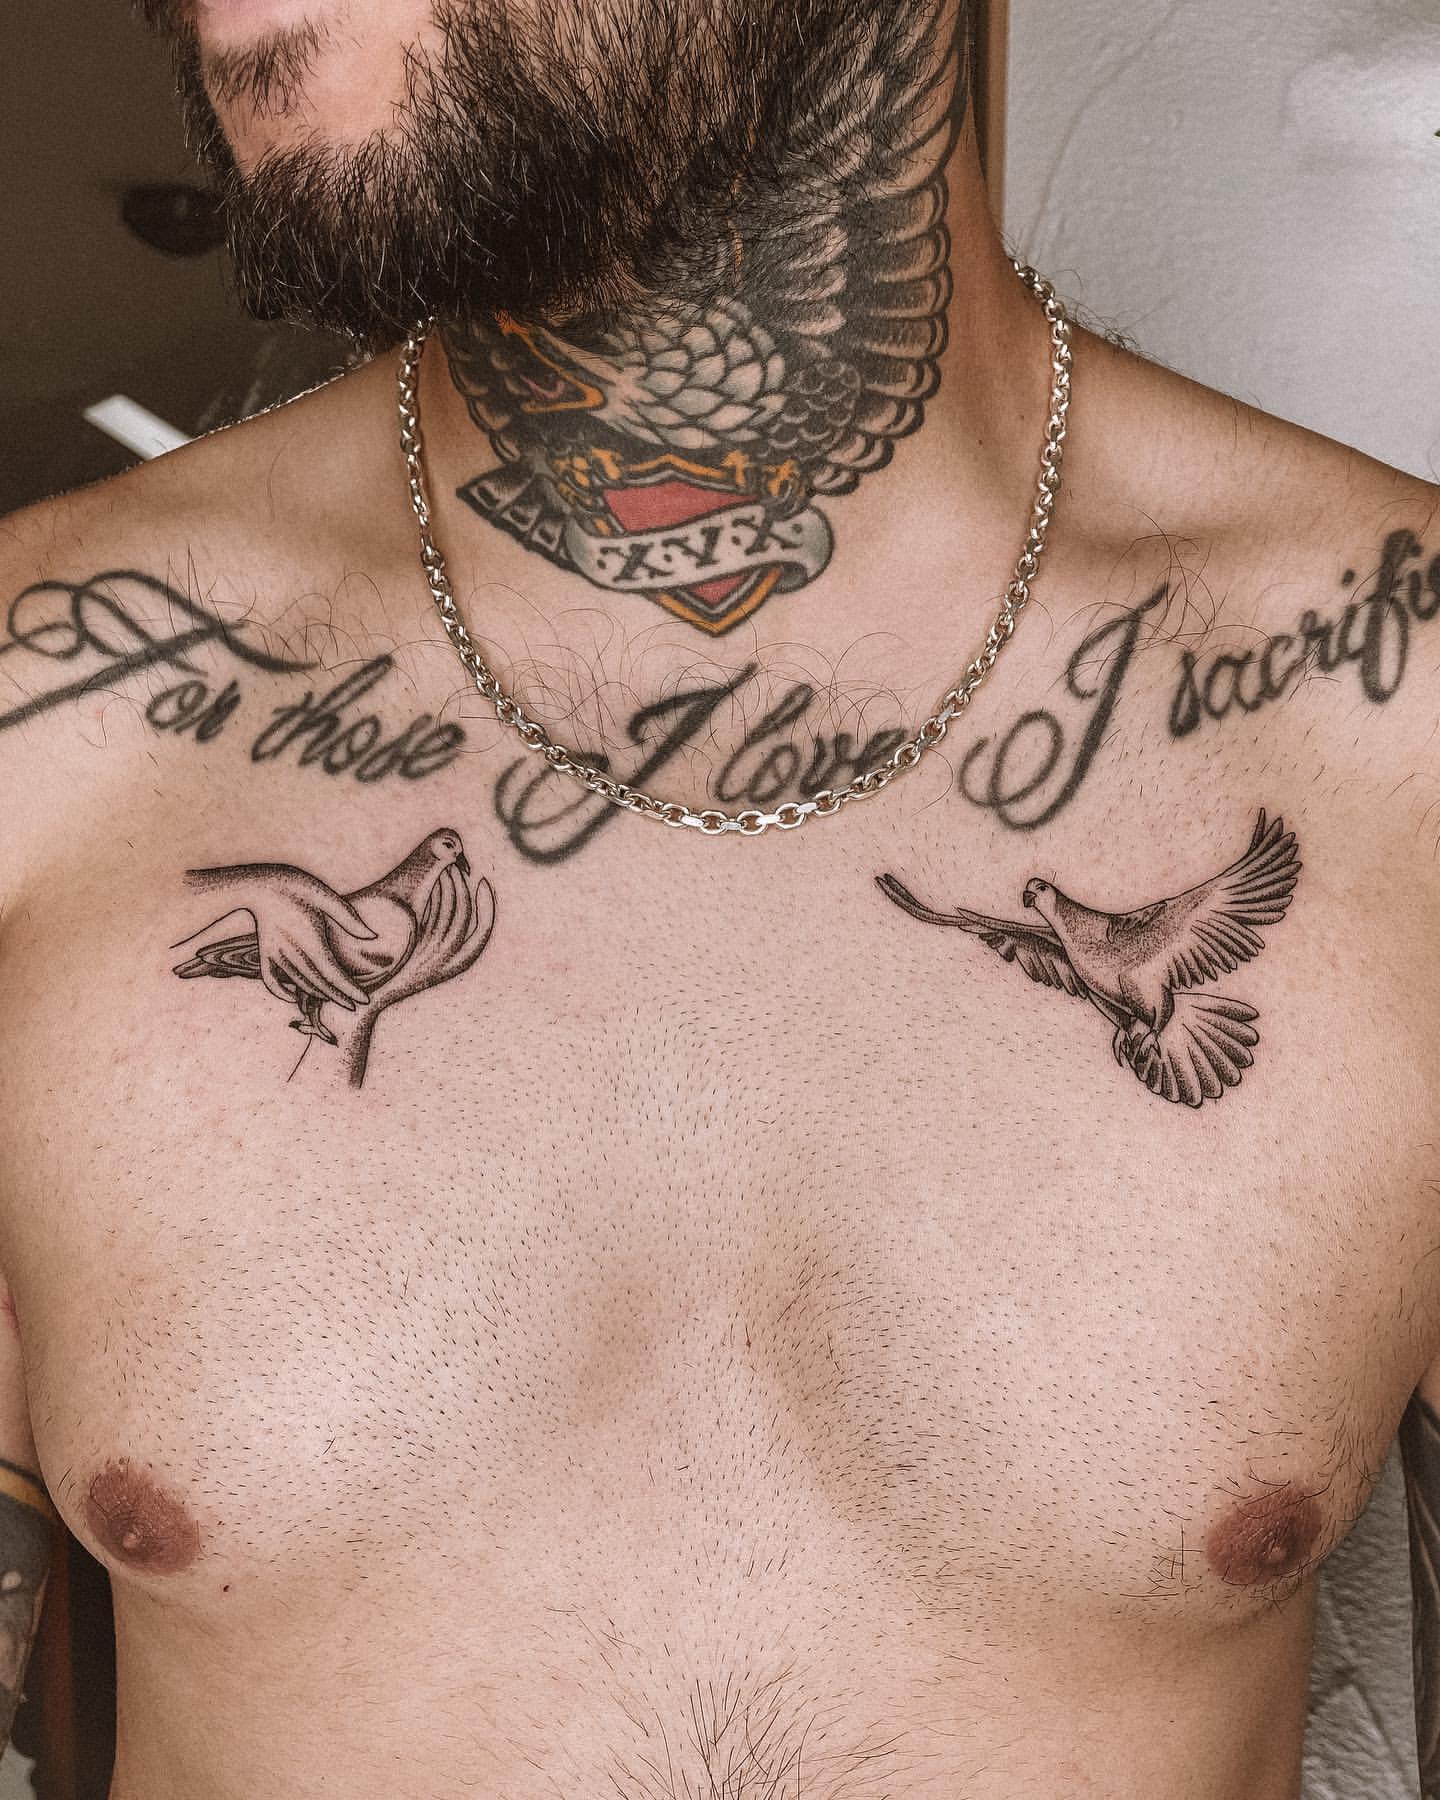 Little Tattoos — Minimalist cat tattoo on the chest. Tattoo artist:...